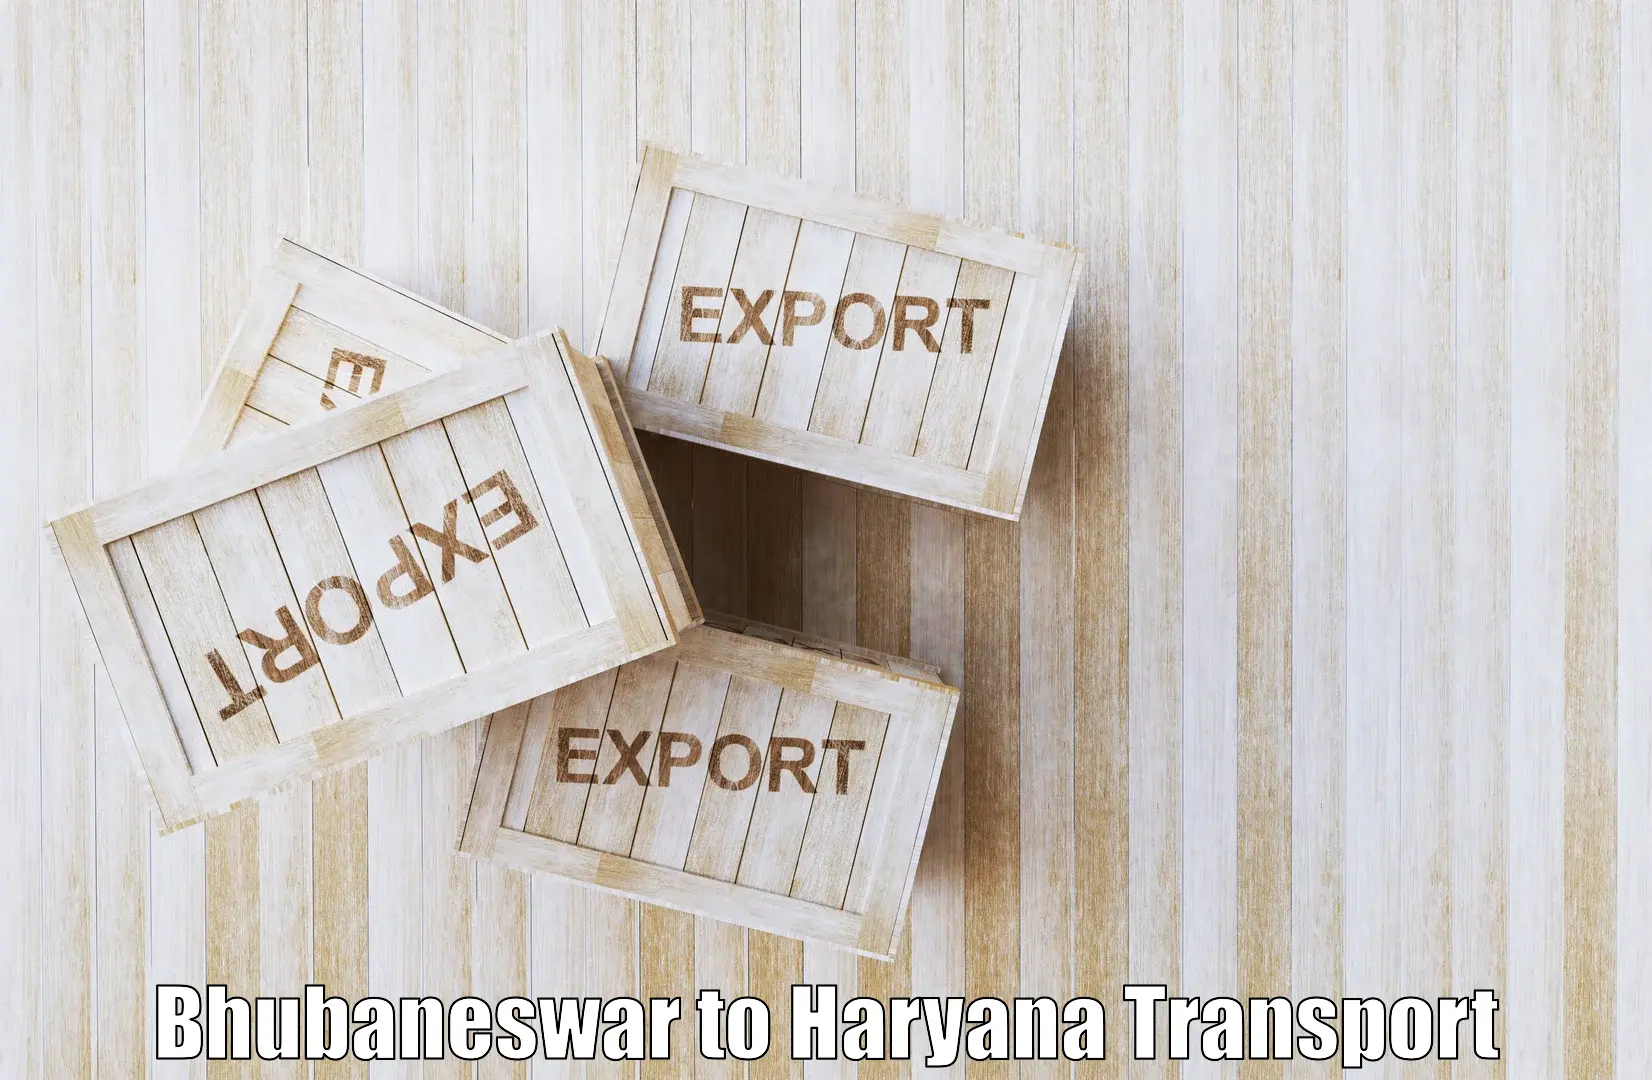 Cargo transport services Bhubaneswar to Panchkula